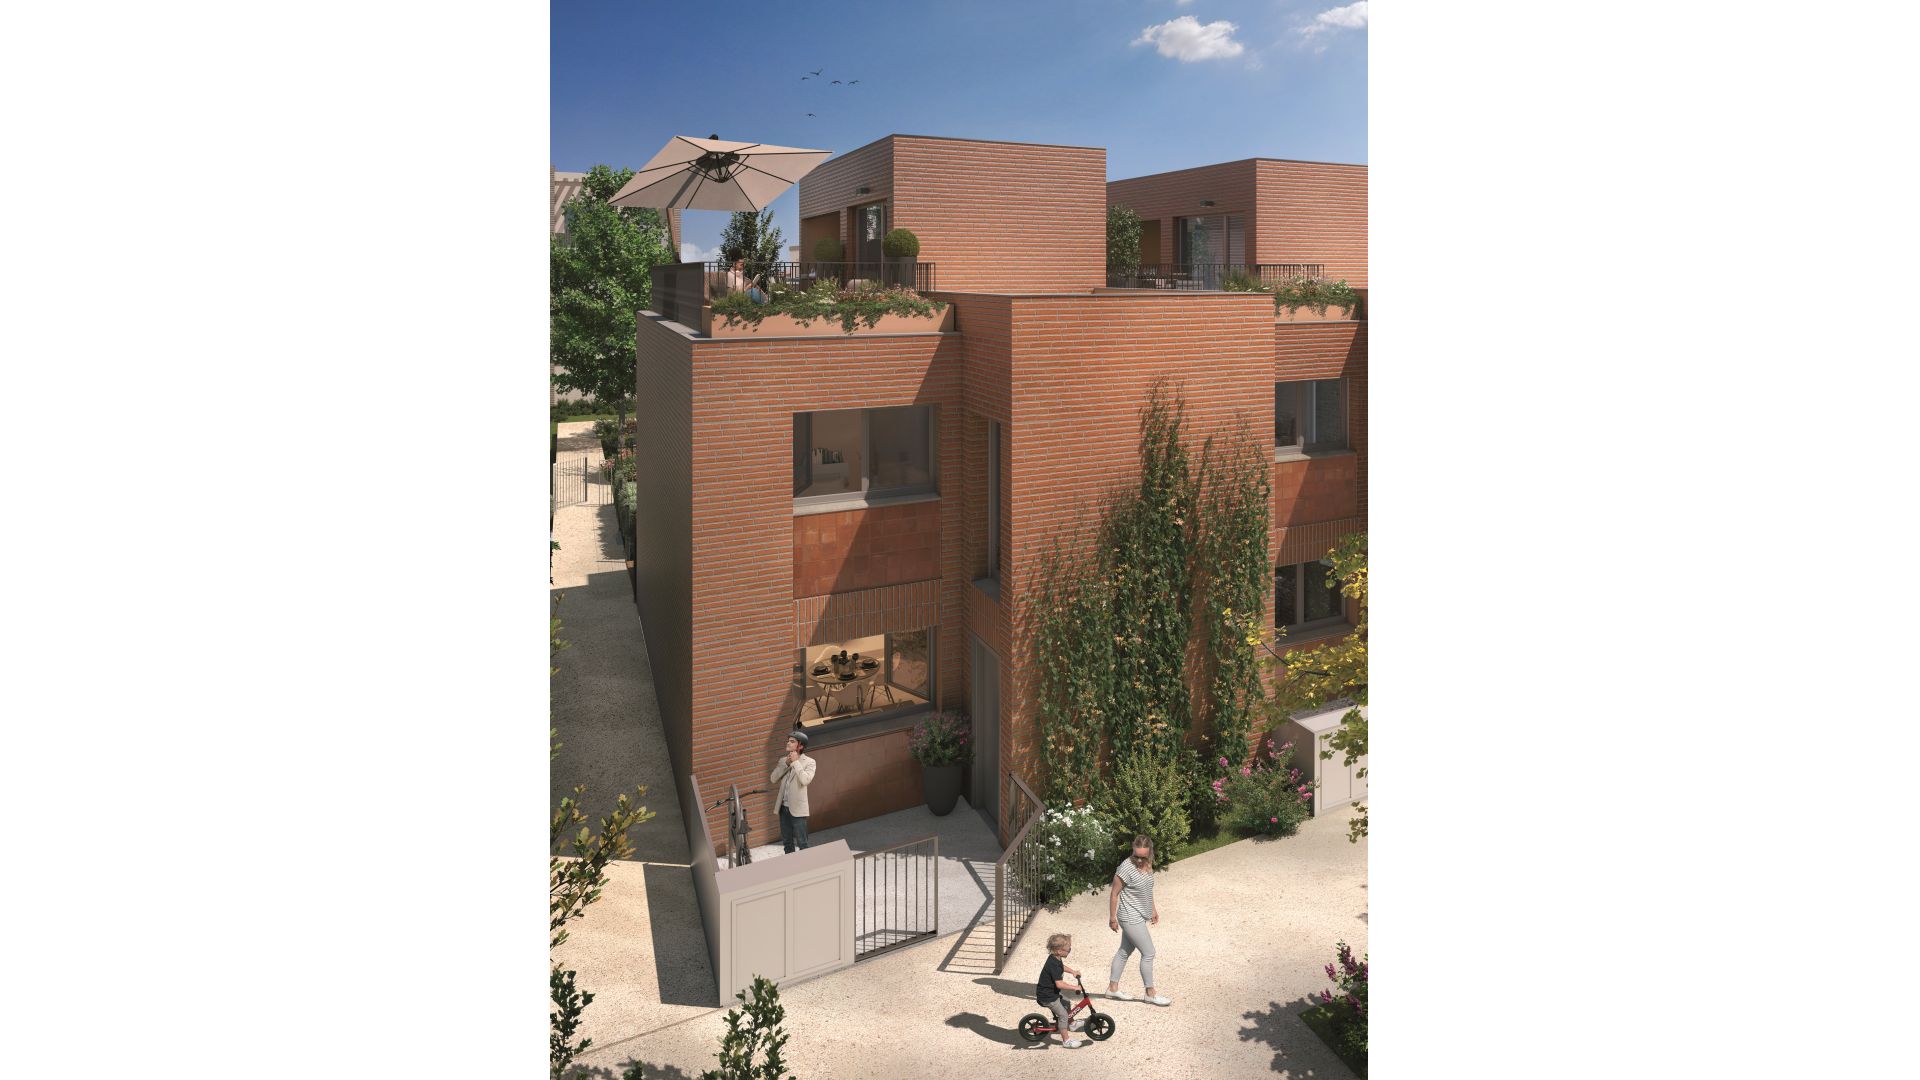 Greencity immobilier - achat appartements neufs du TBis au T4 et villas T5 - Résidence l'Orival - 31400 Toulouse  